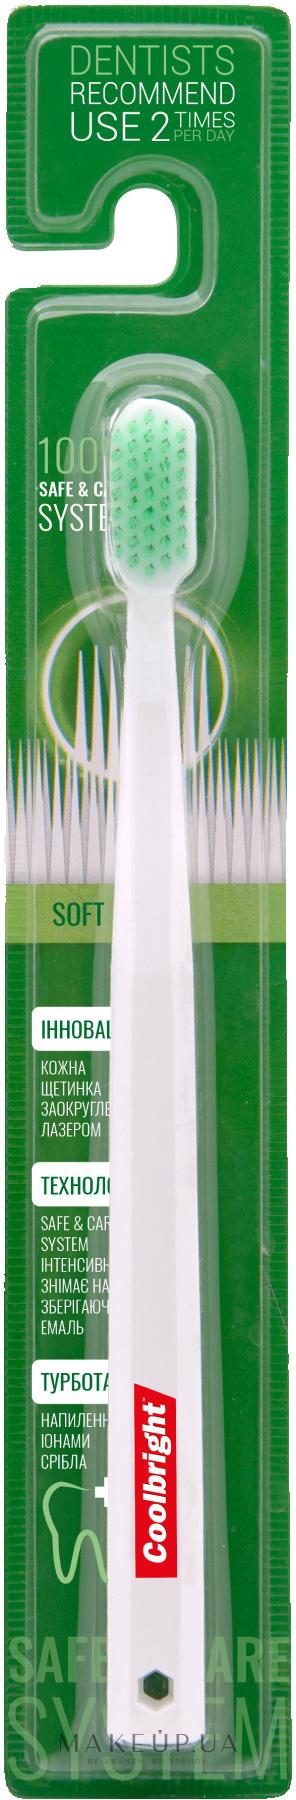 Зубна щітка Coolbright Safe&Care Soft - фото 1